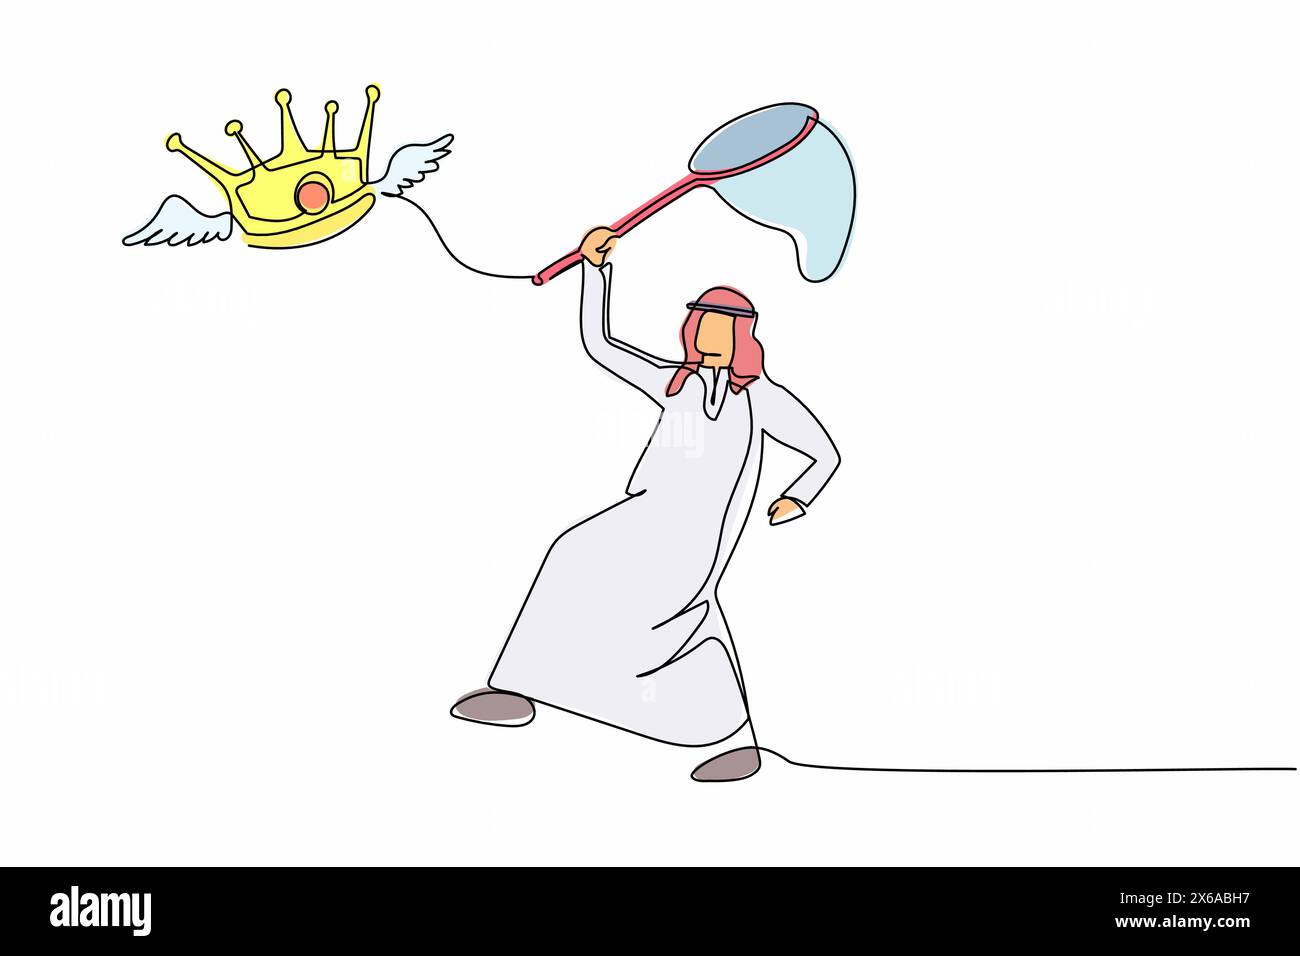 Linea singola continua che disegna un uomo d'affari arabo cerca di catturare la corona volante con la rete a farfalla. Non è riuscito a controllare l'impero degli affari. Metap aziendale Illustrazione Vettoriale